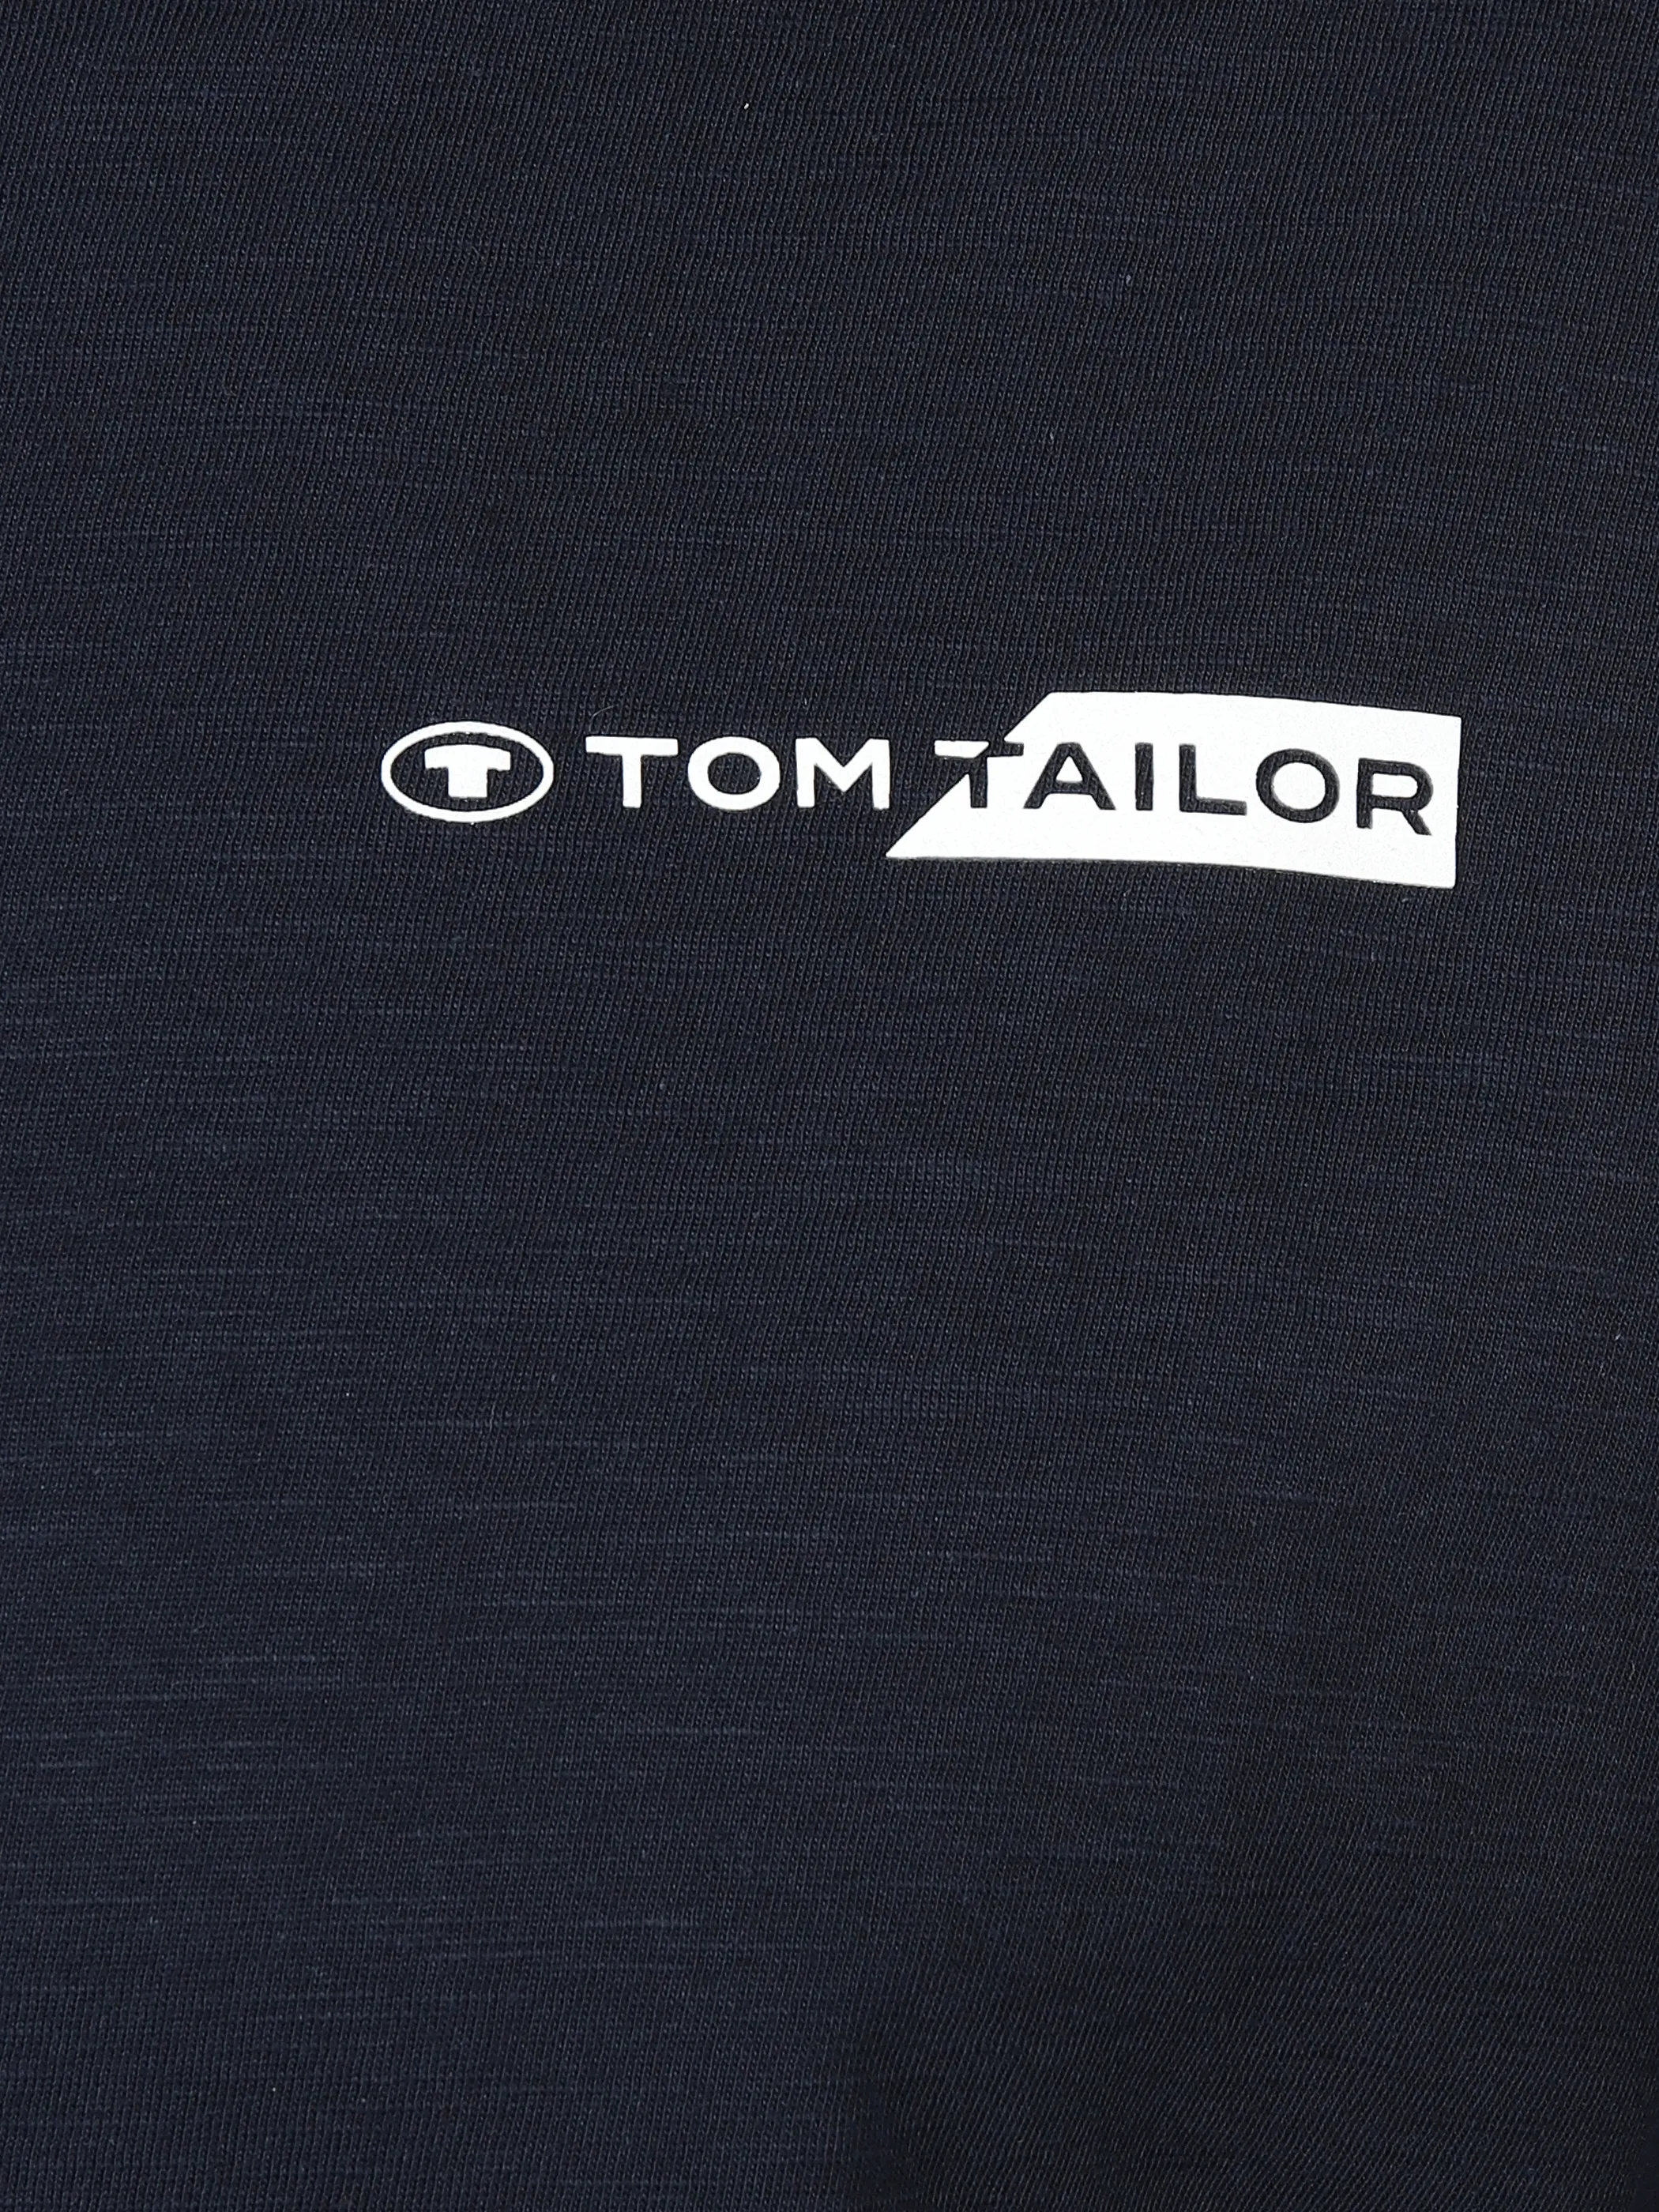 Tom Tailor 1040821 NOS printed t-shirt Logo Blau 890933 10668 3